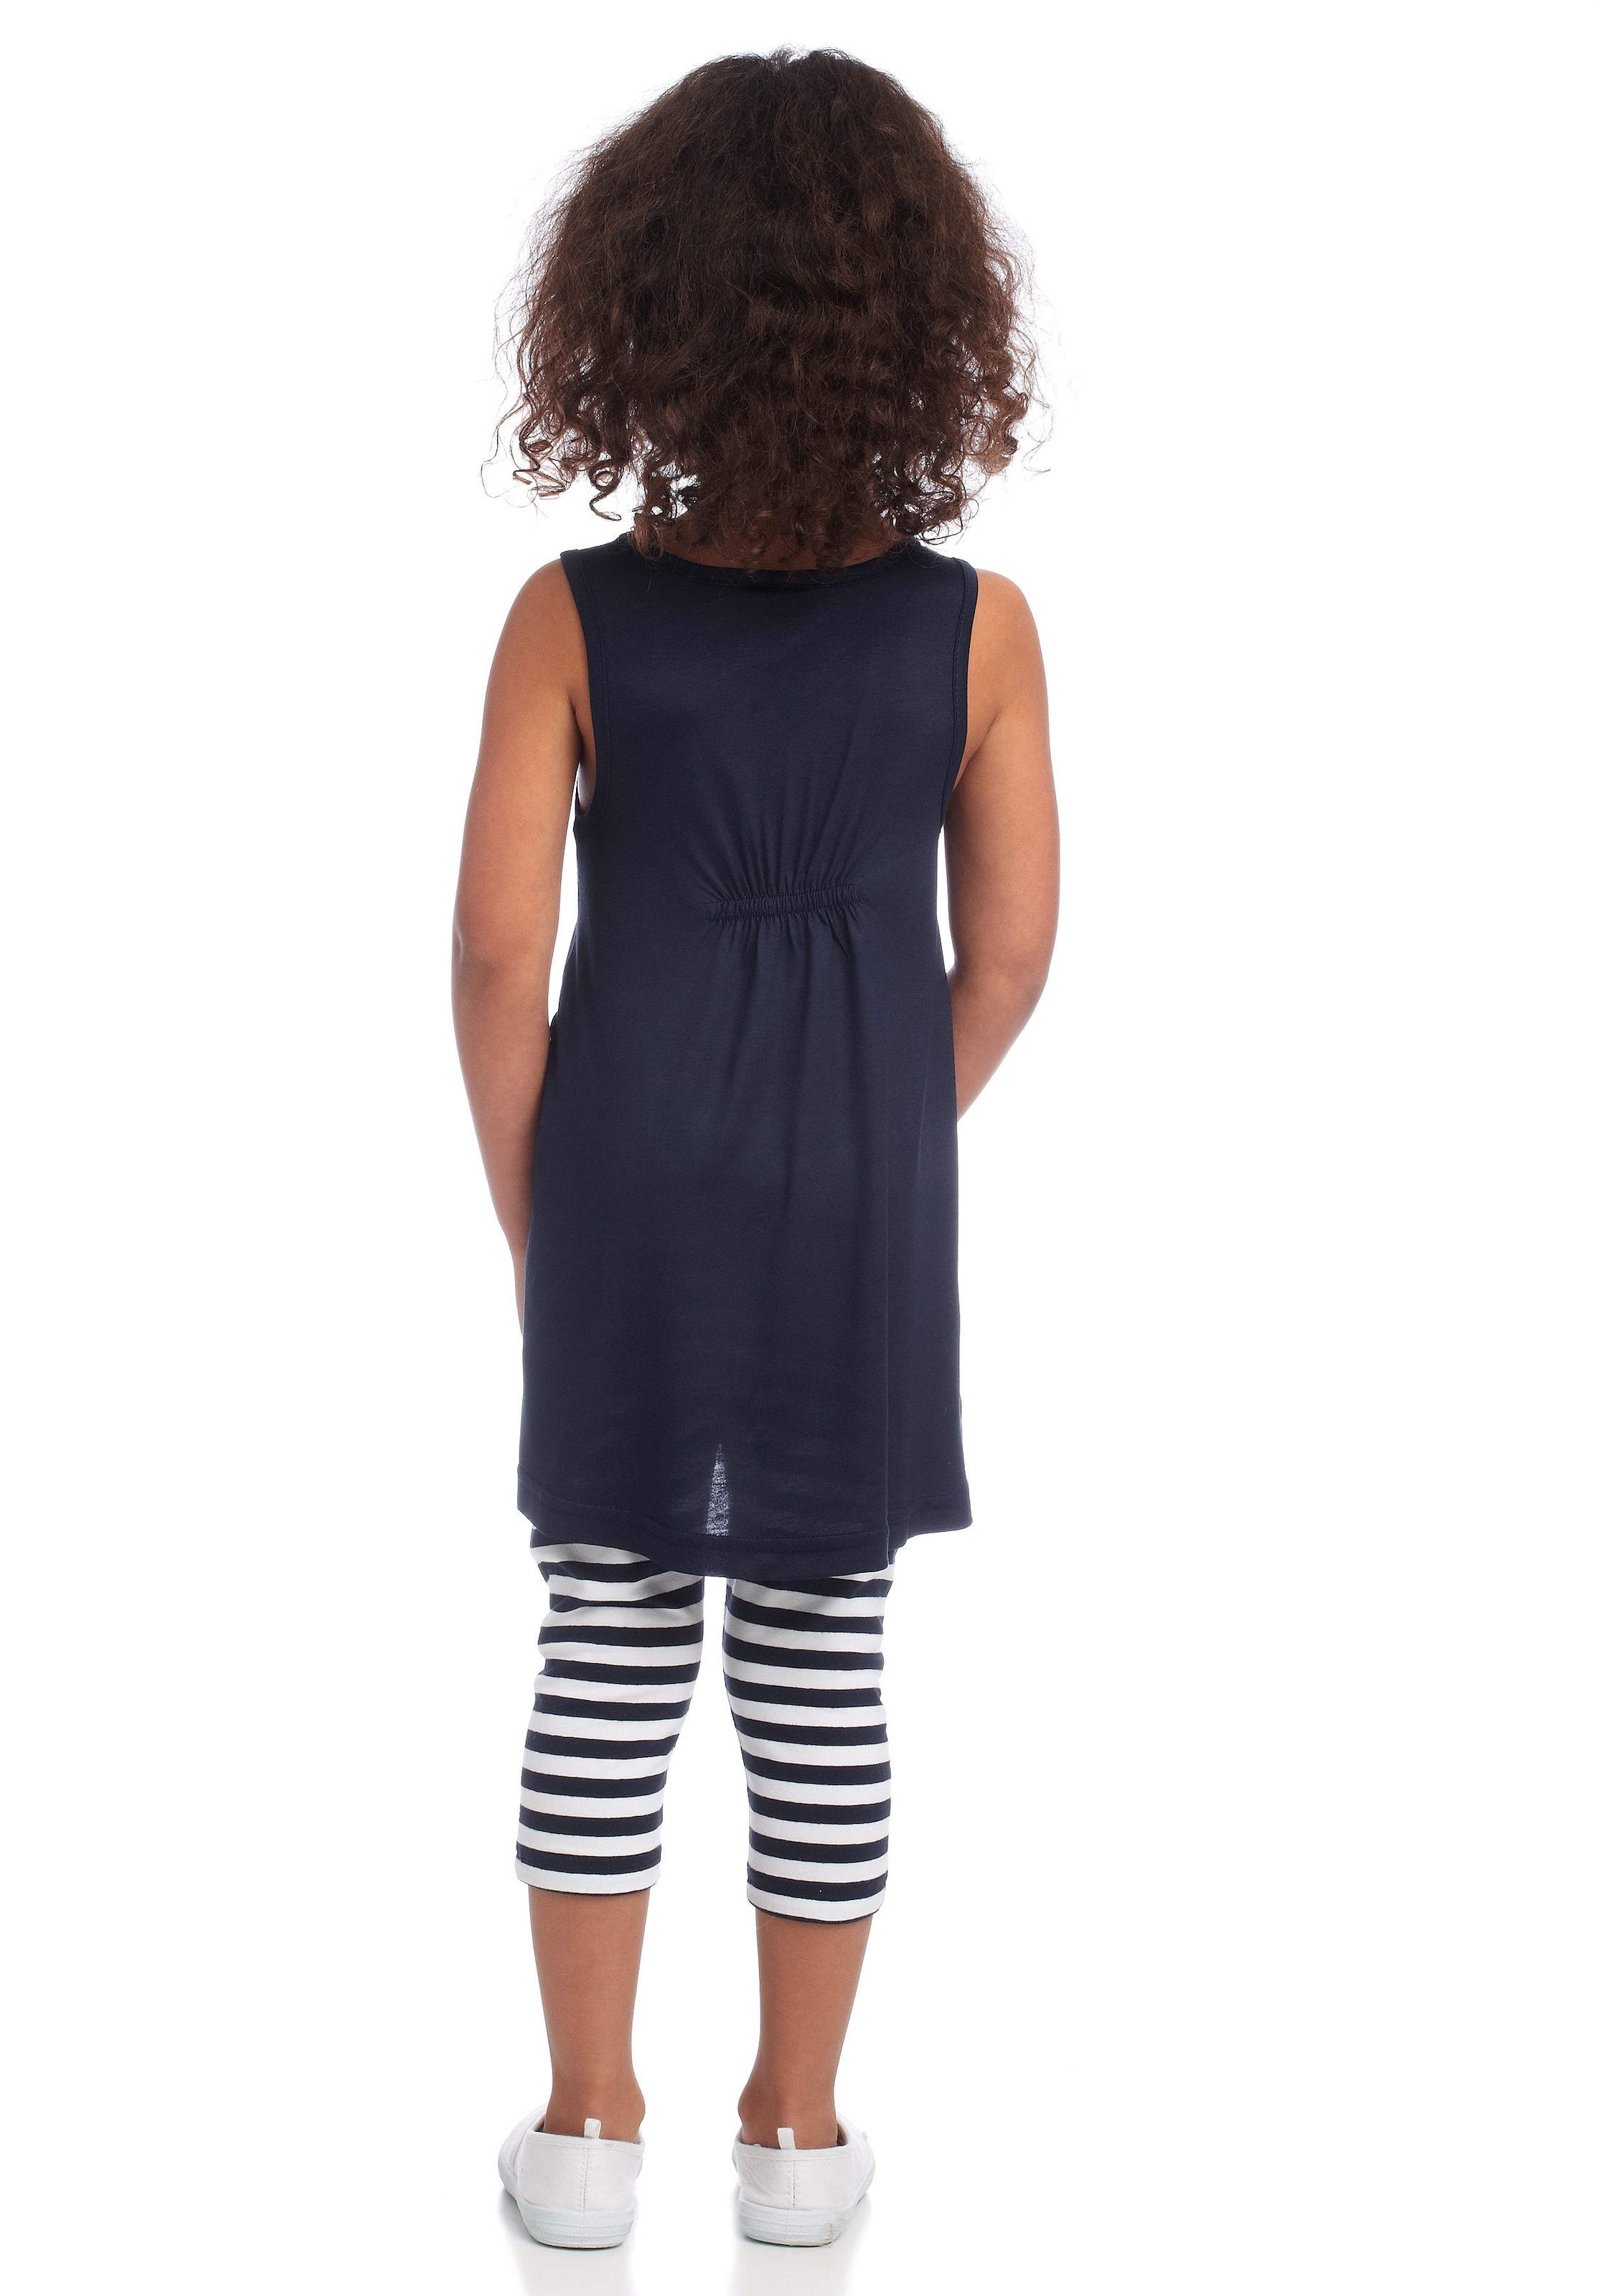 KIDSWORLD Kleid, Leggings & Haarband, (Set, 3 tlg.), Capri und Haarband maritim geringelt